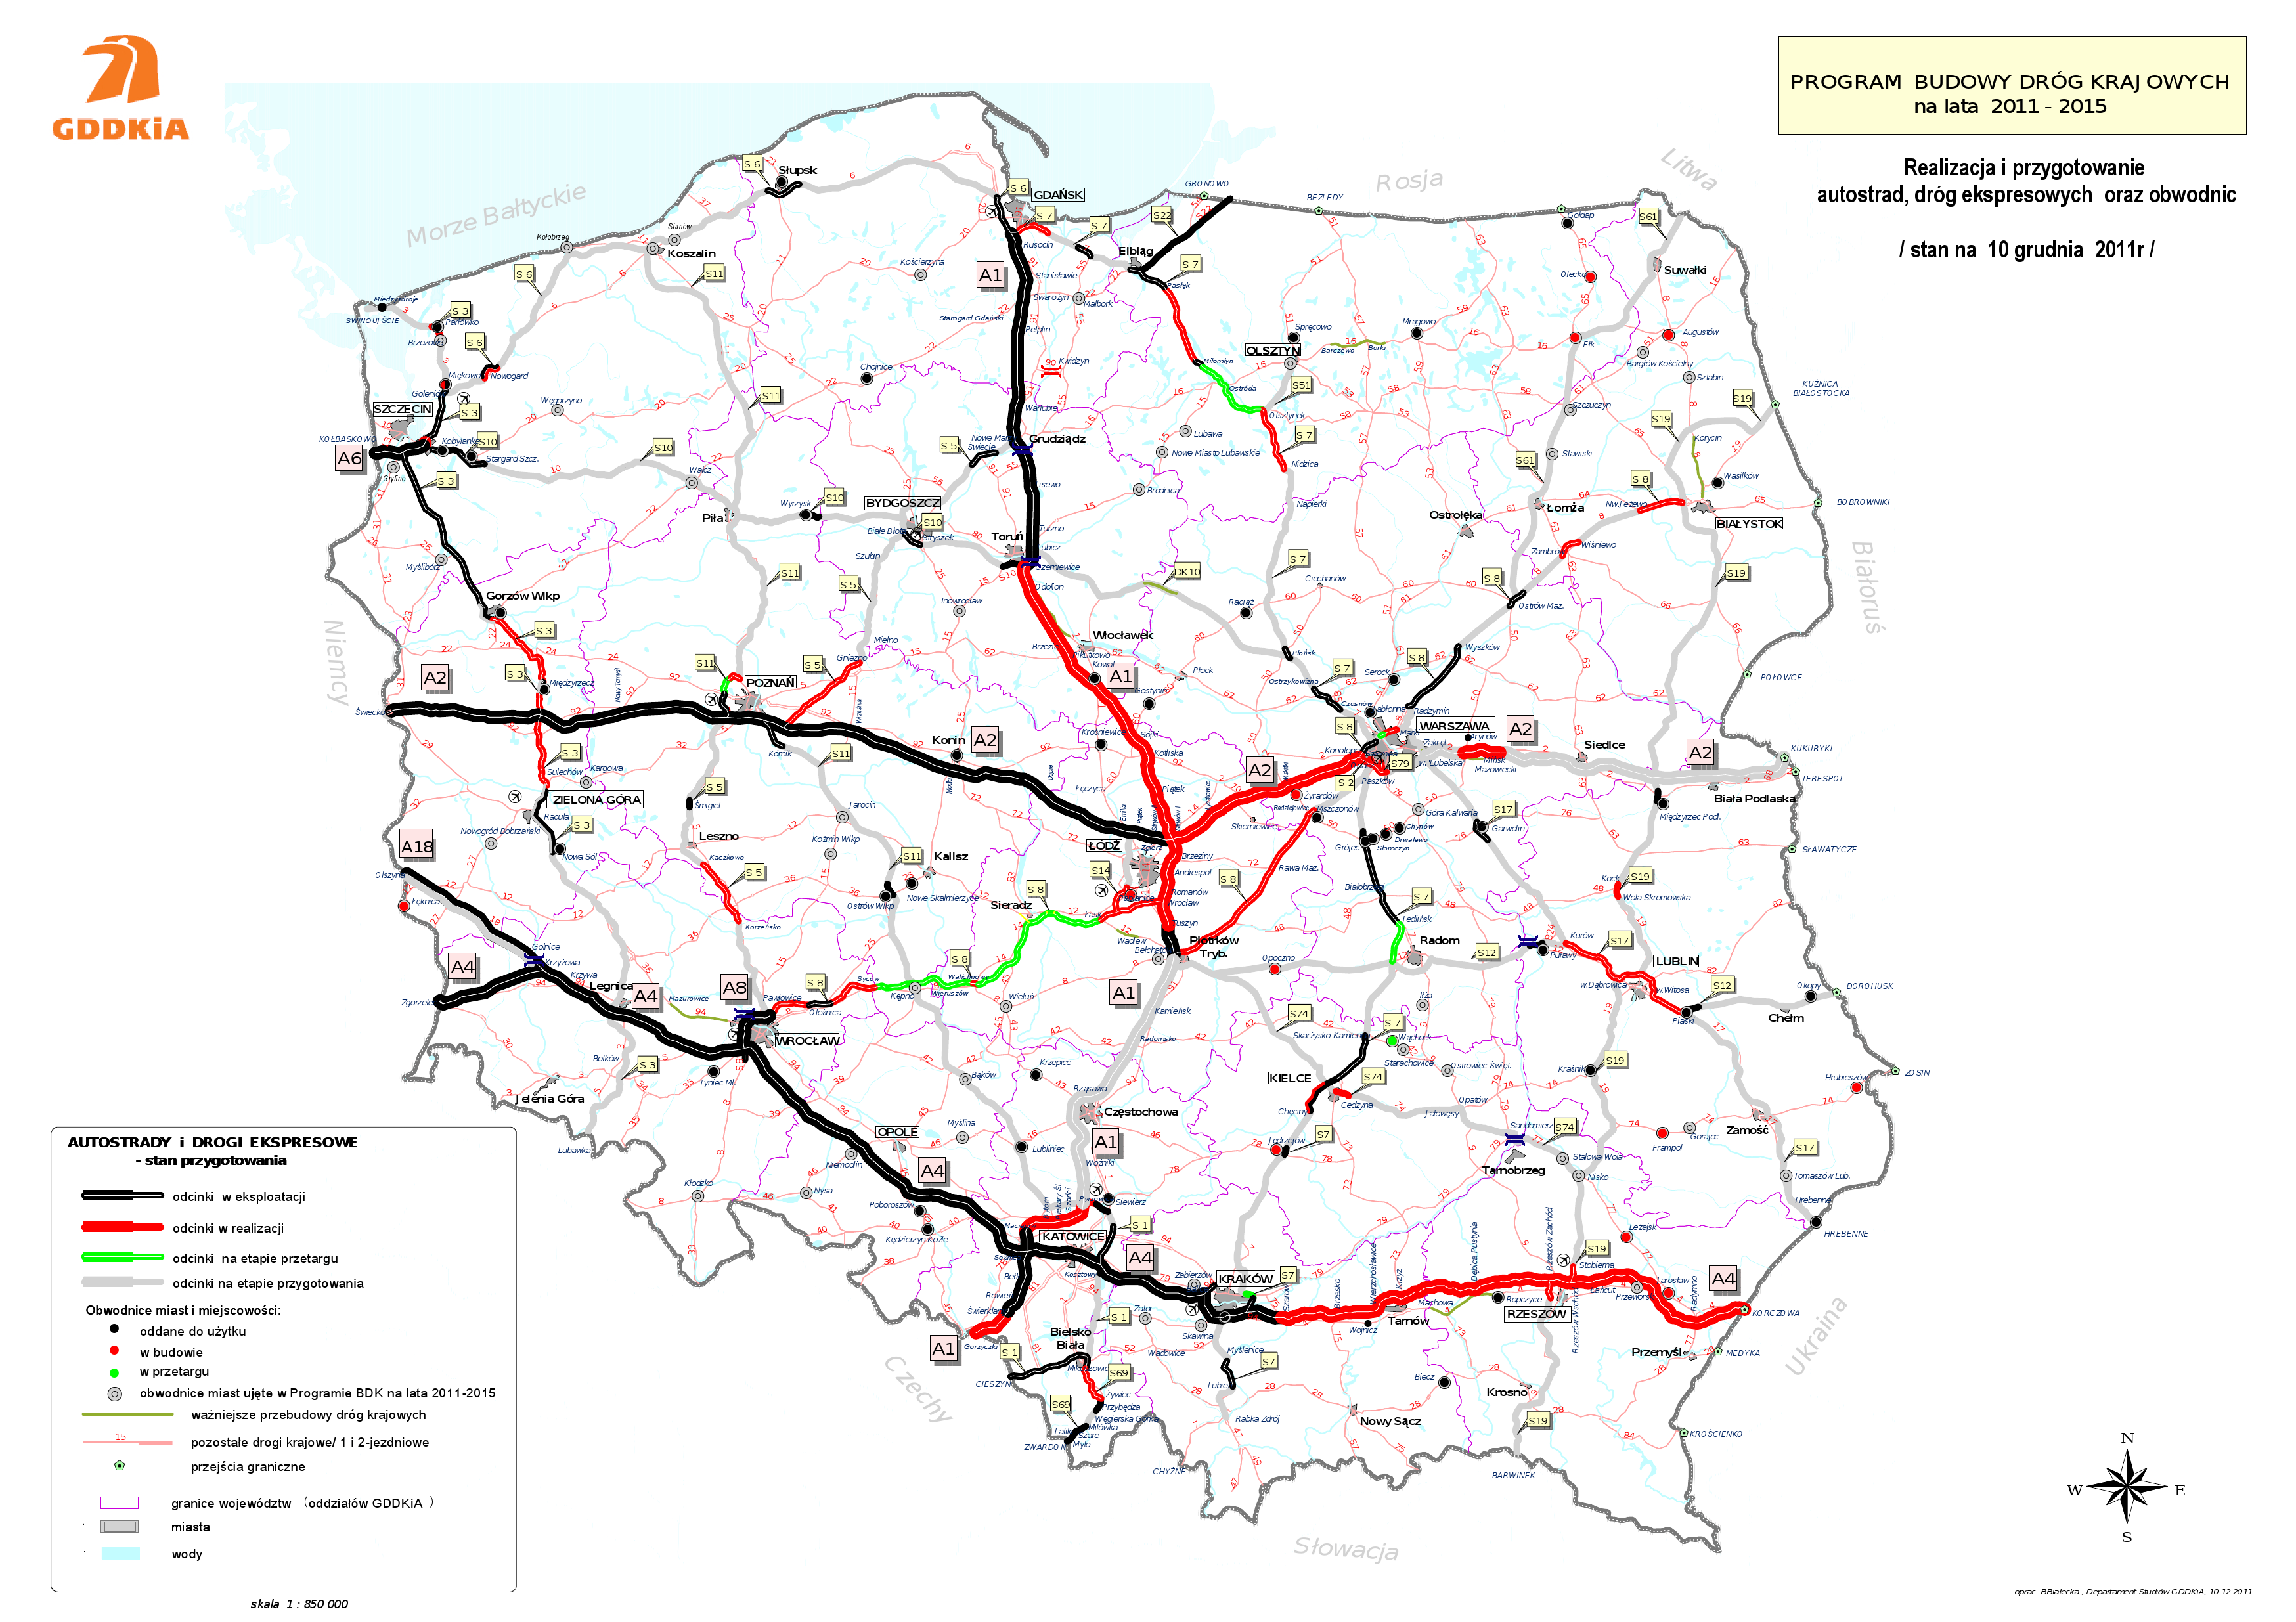 Bmw mapa polski 2012